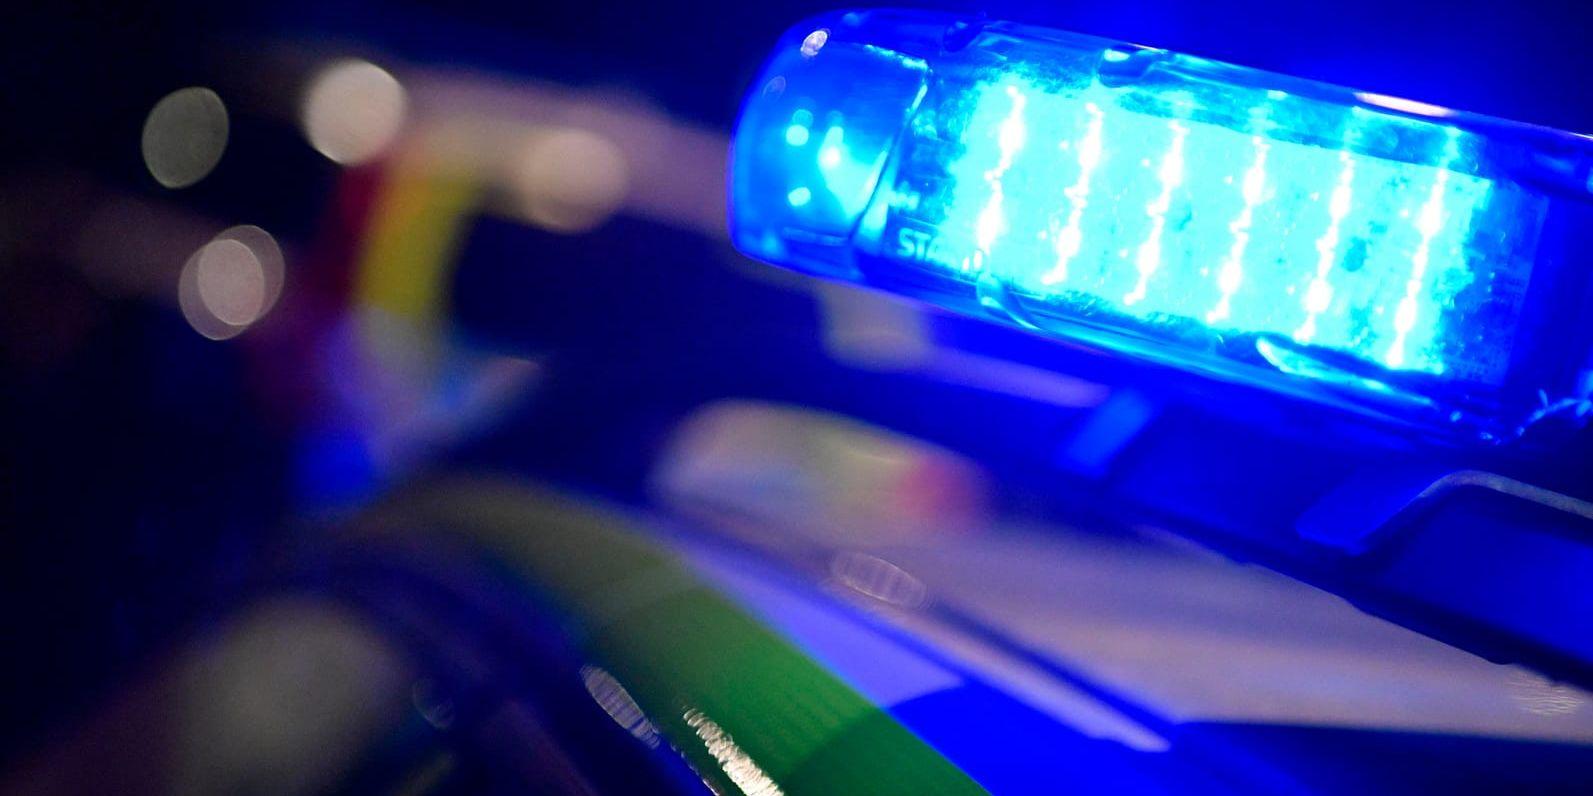 En skadad man i 20-årsåldern sökte under natten hjälp i ett samhälle utanför Lund och polisen misstänker att han skadats i samband med en kidnappning. Arkivbild.